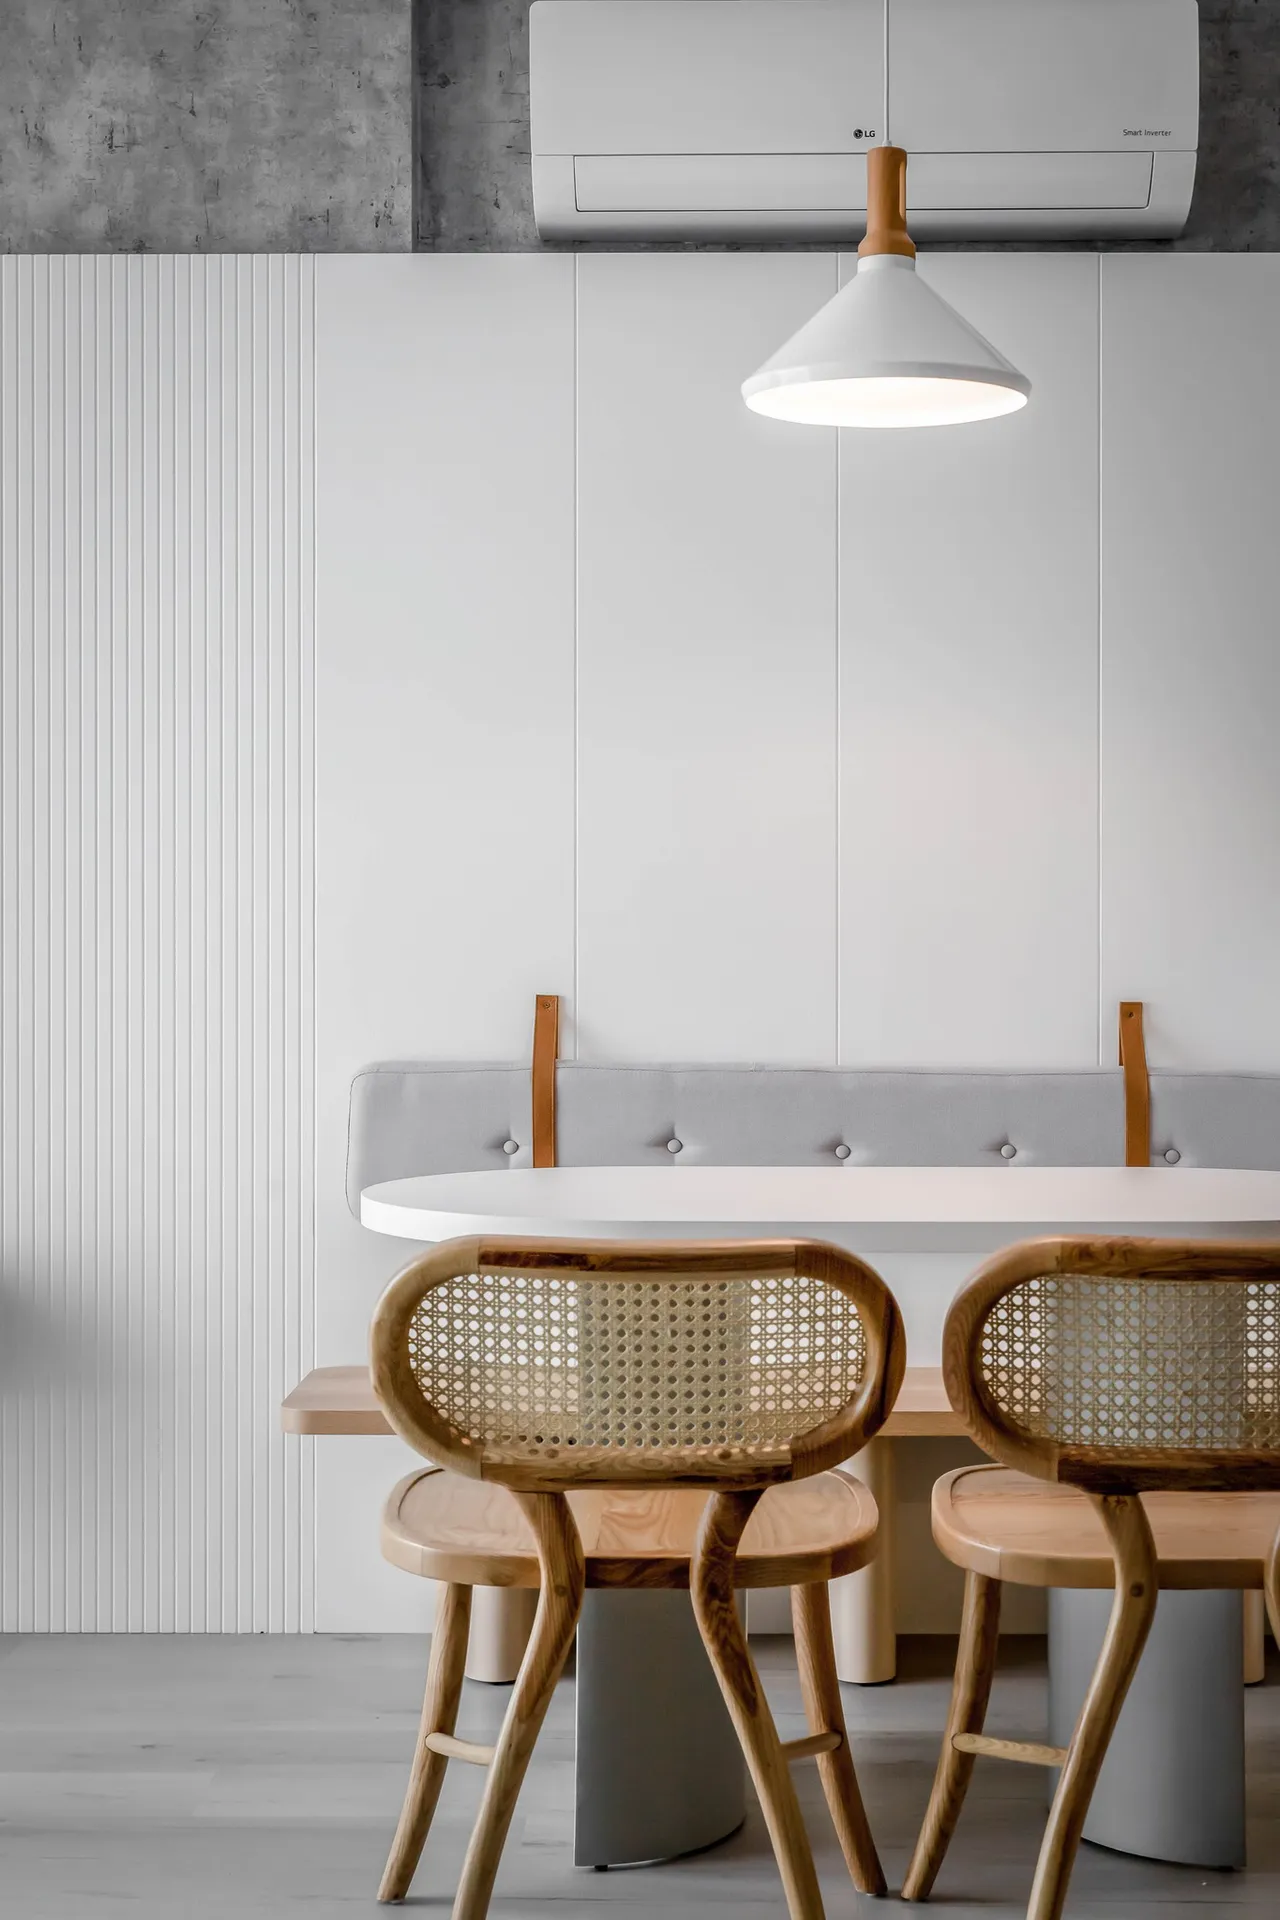 Hoàn thiện nội thất phòng ăn Căn hộ S107 Vinhomes Grand Park phong cách Tối giản Minimalist